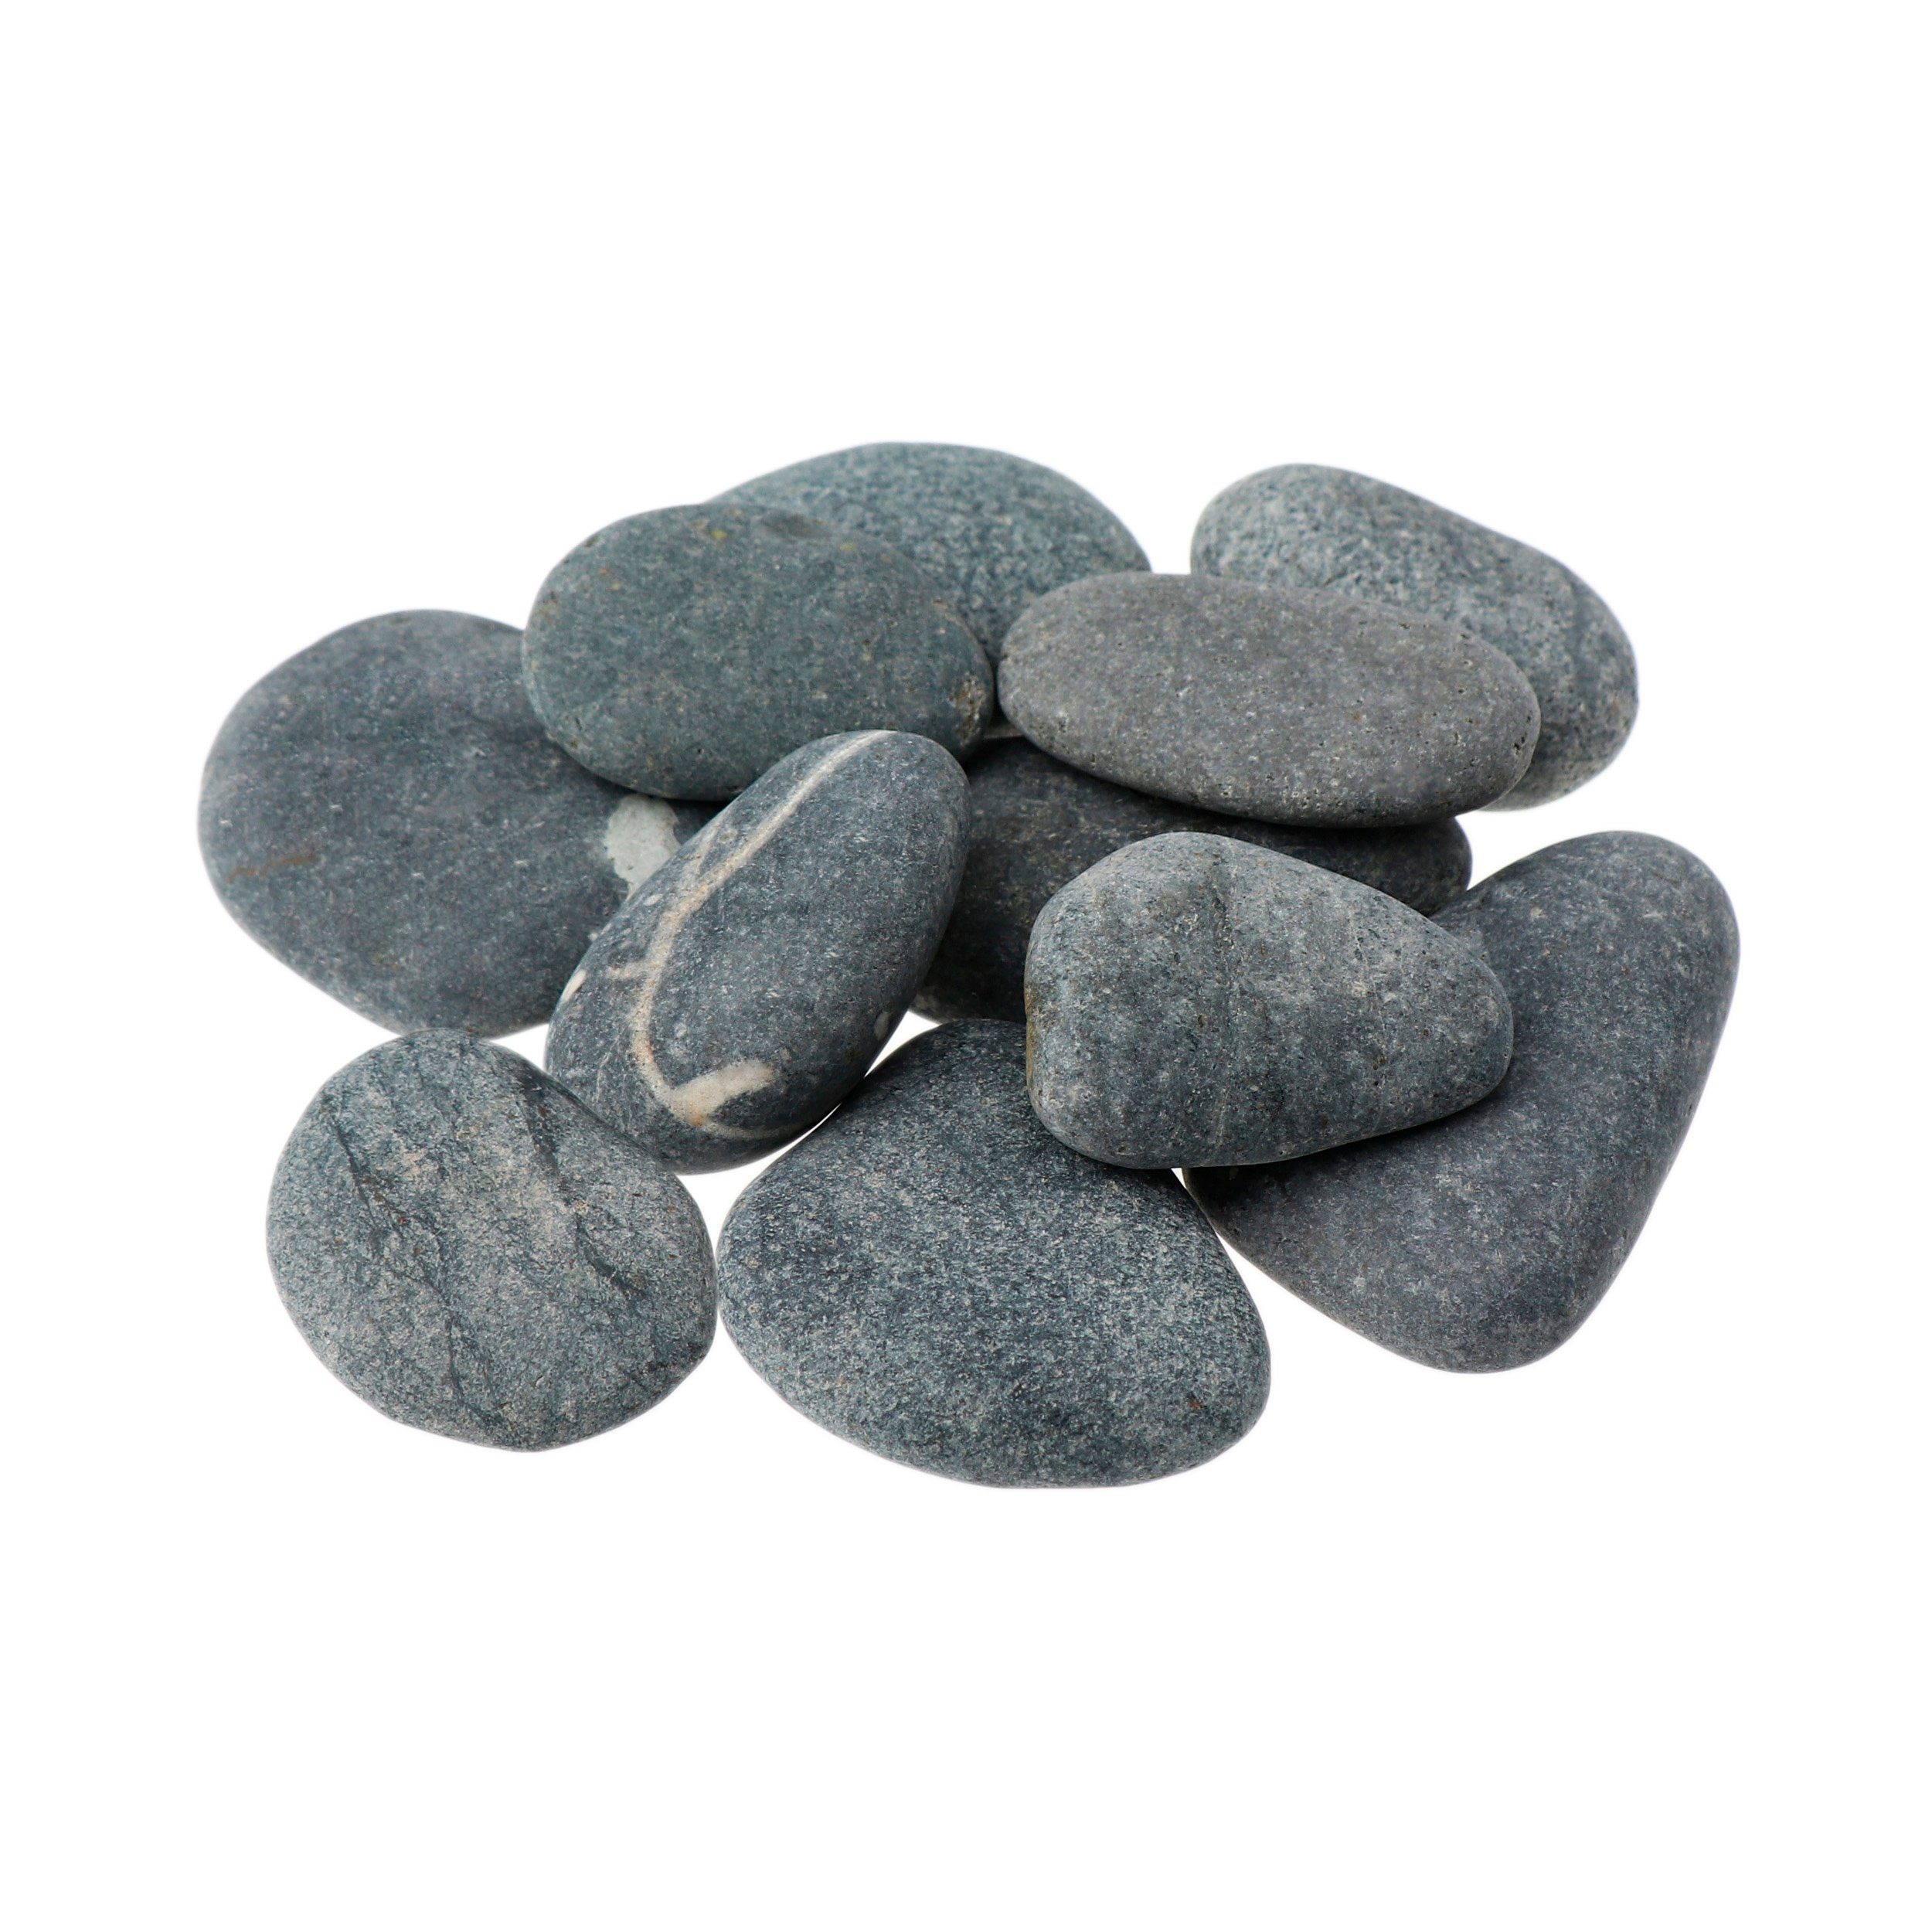 NKlaus Mineralstein 500g - Hot Entspannungsstein Stone 50 Wellness Massagesteine vulk 60mm